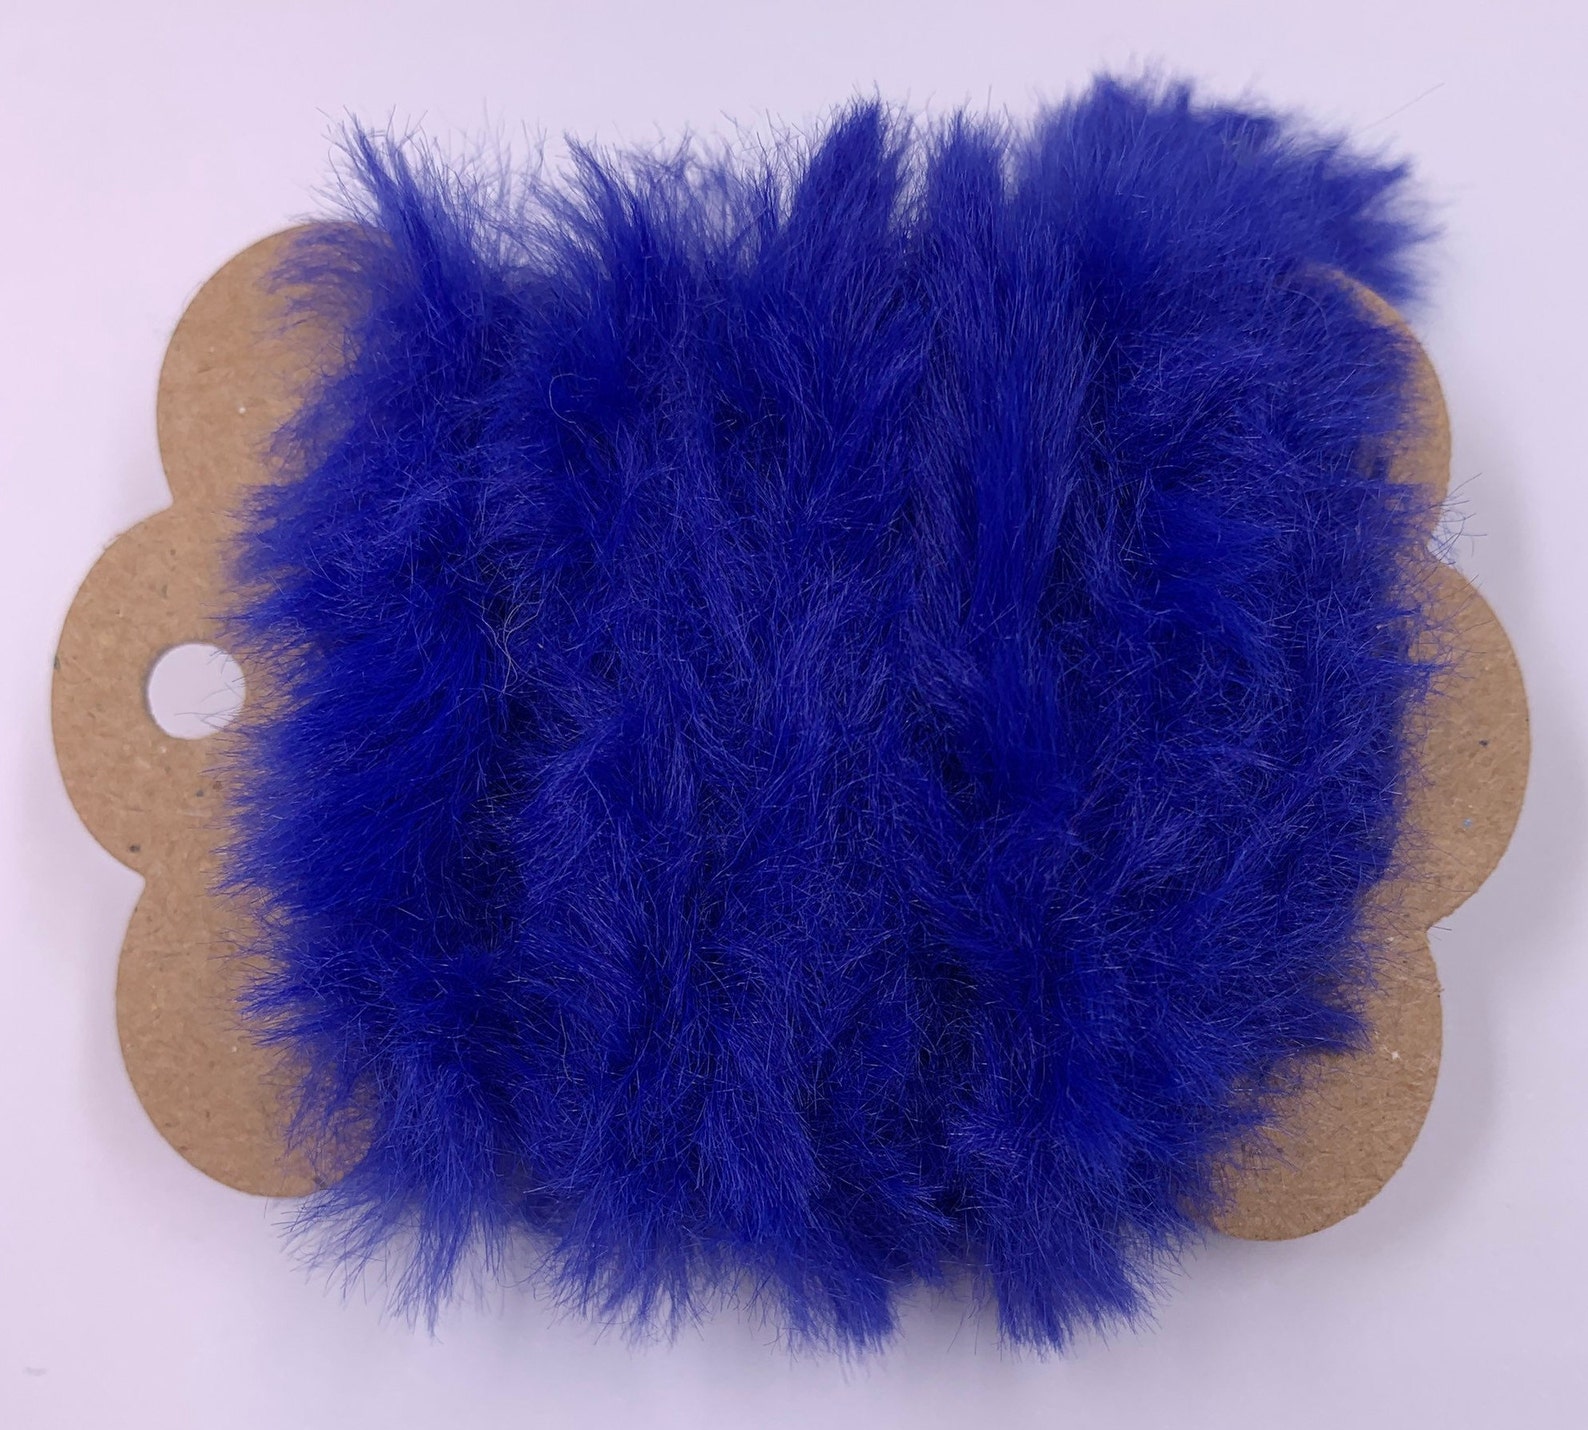 1 Yd Faux Fur Yarn royal Blue Trim Novelty Fibers Scrapbooks - Etsy